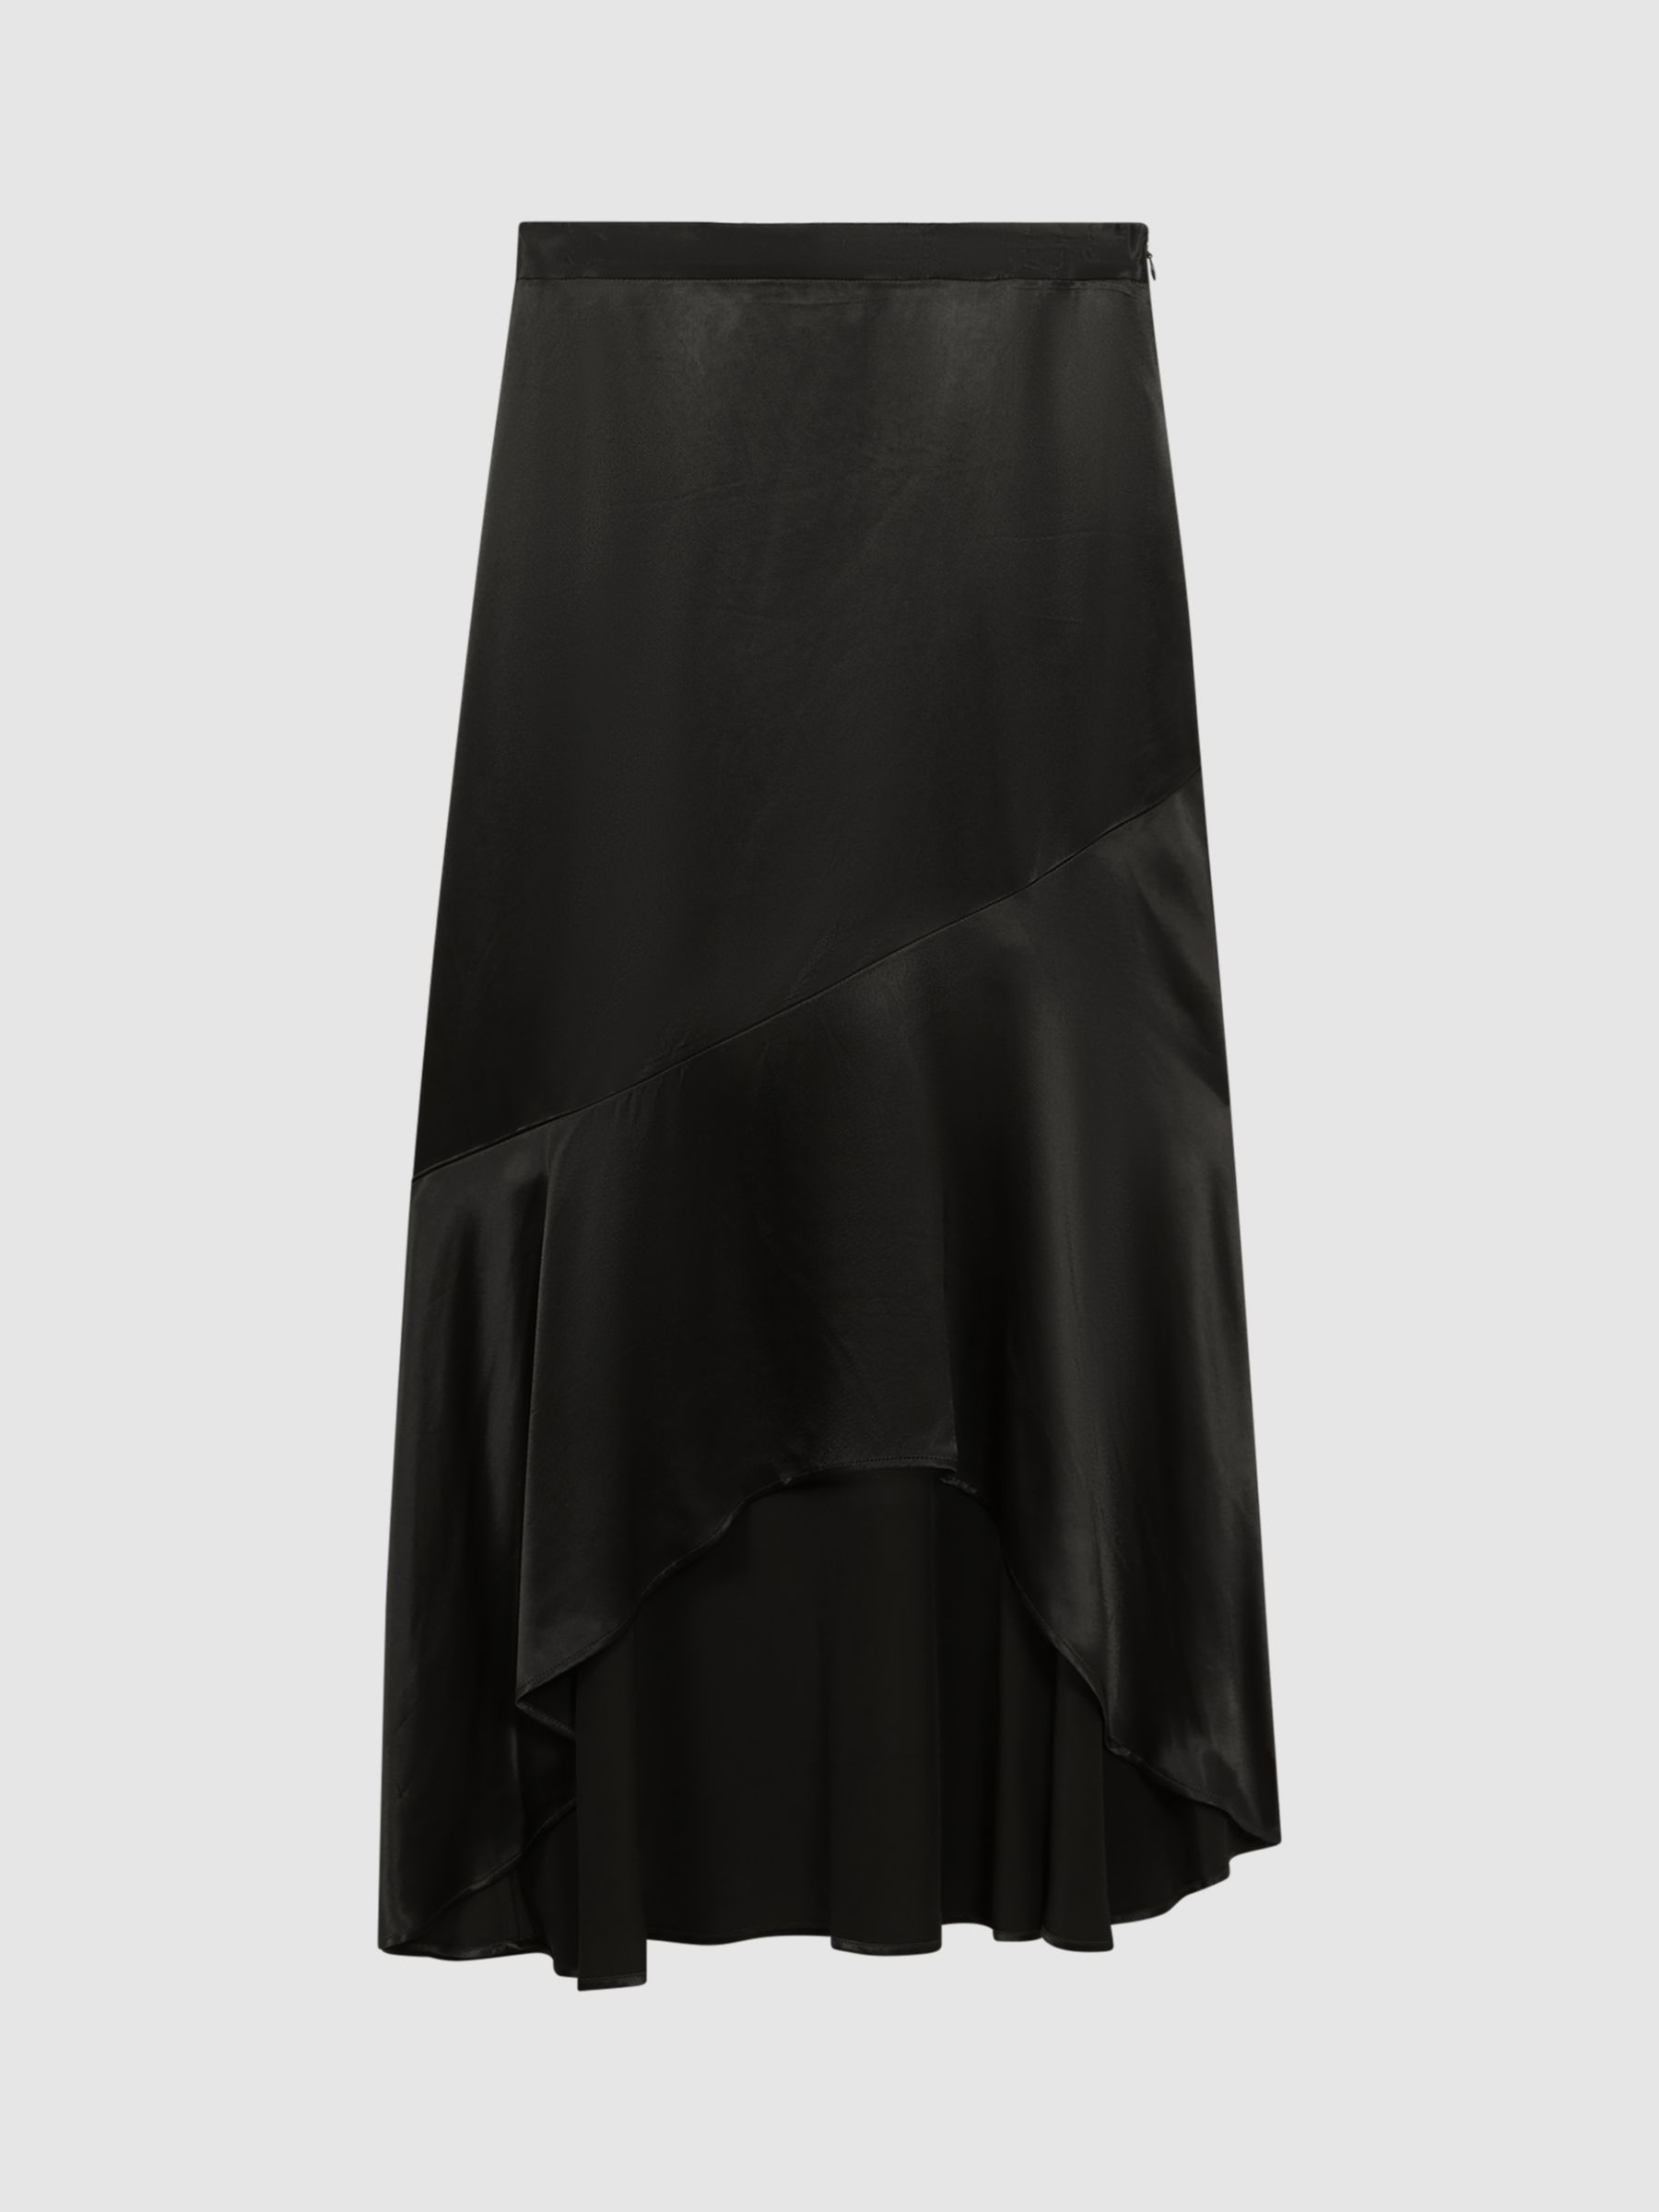 REISS Green Bias Cut Asymmetrical Block Lined Skirt Size UK 8